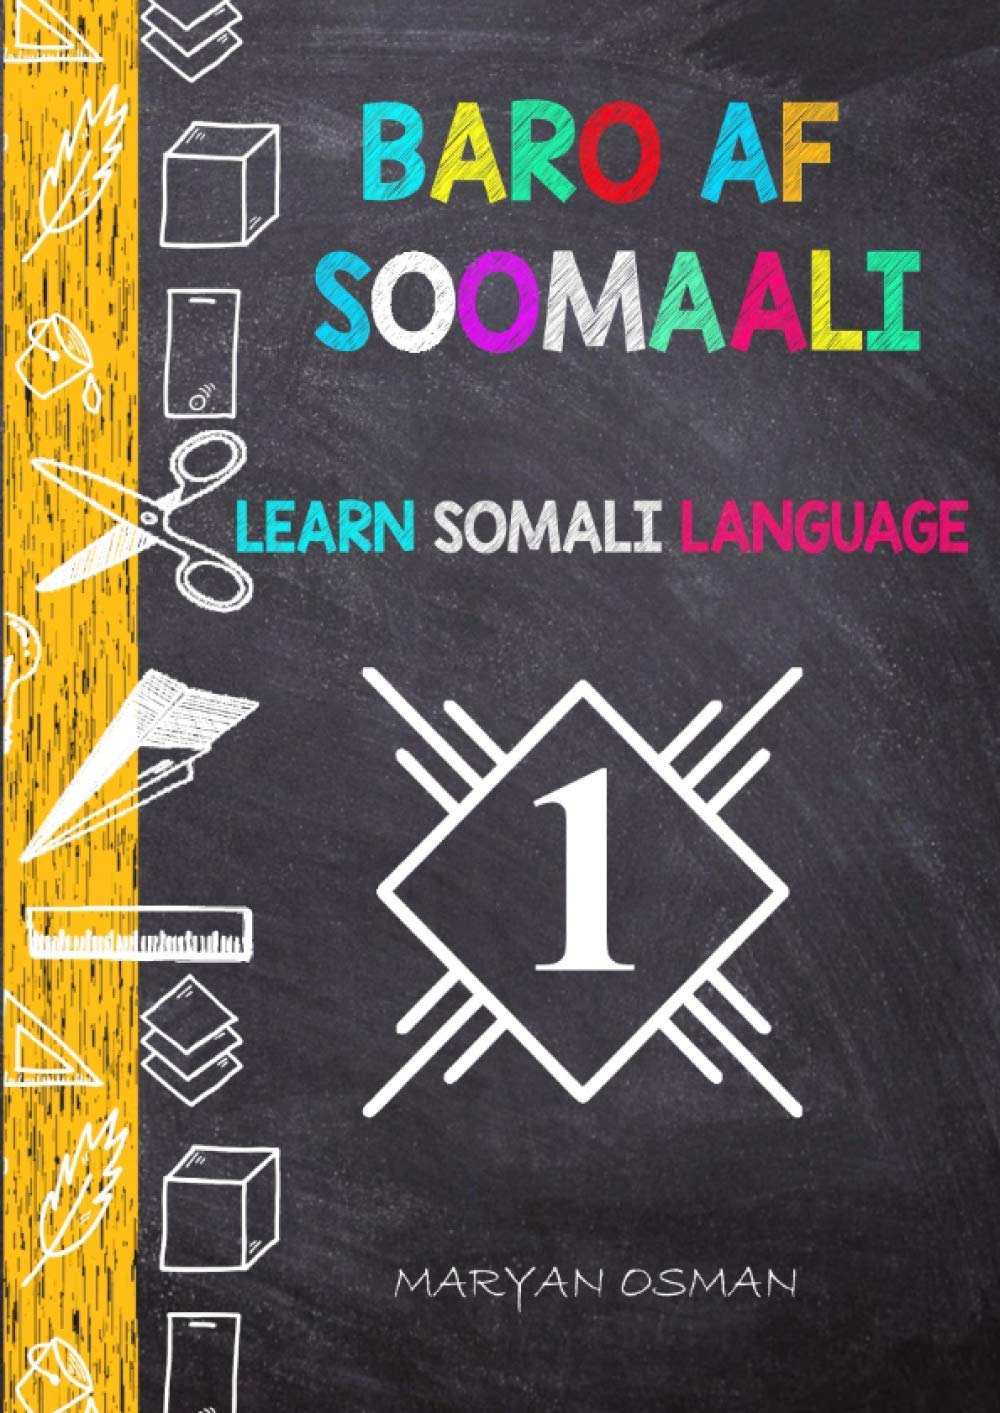 Somali book for kids